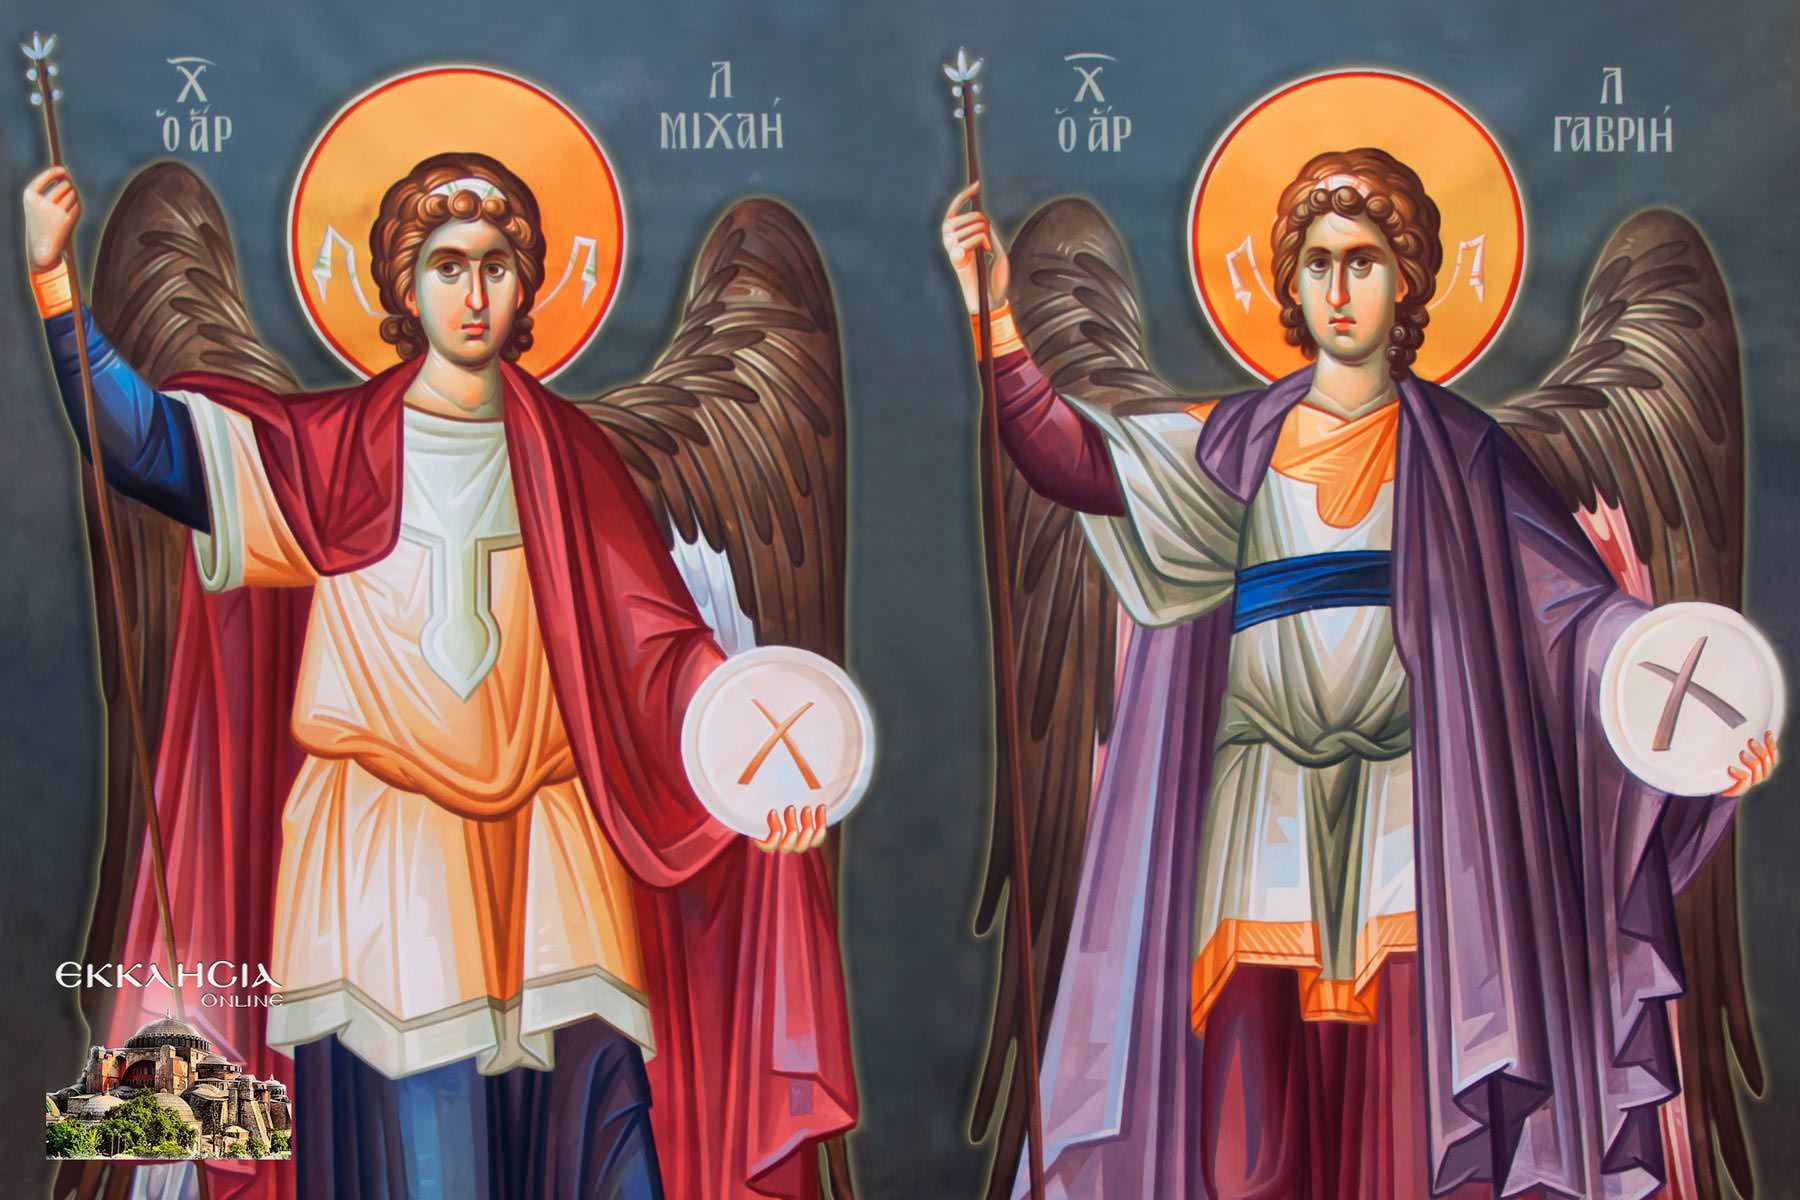 Αρχάγγελοι Μιχαήλ και Γαβριήλ- Ταξιάρχες: Mεγάλη γιορτή της ορθοδοξίας σήμερα 8 Νοεμβρίου